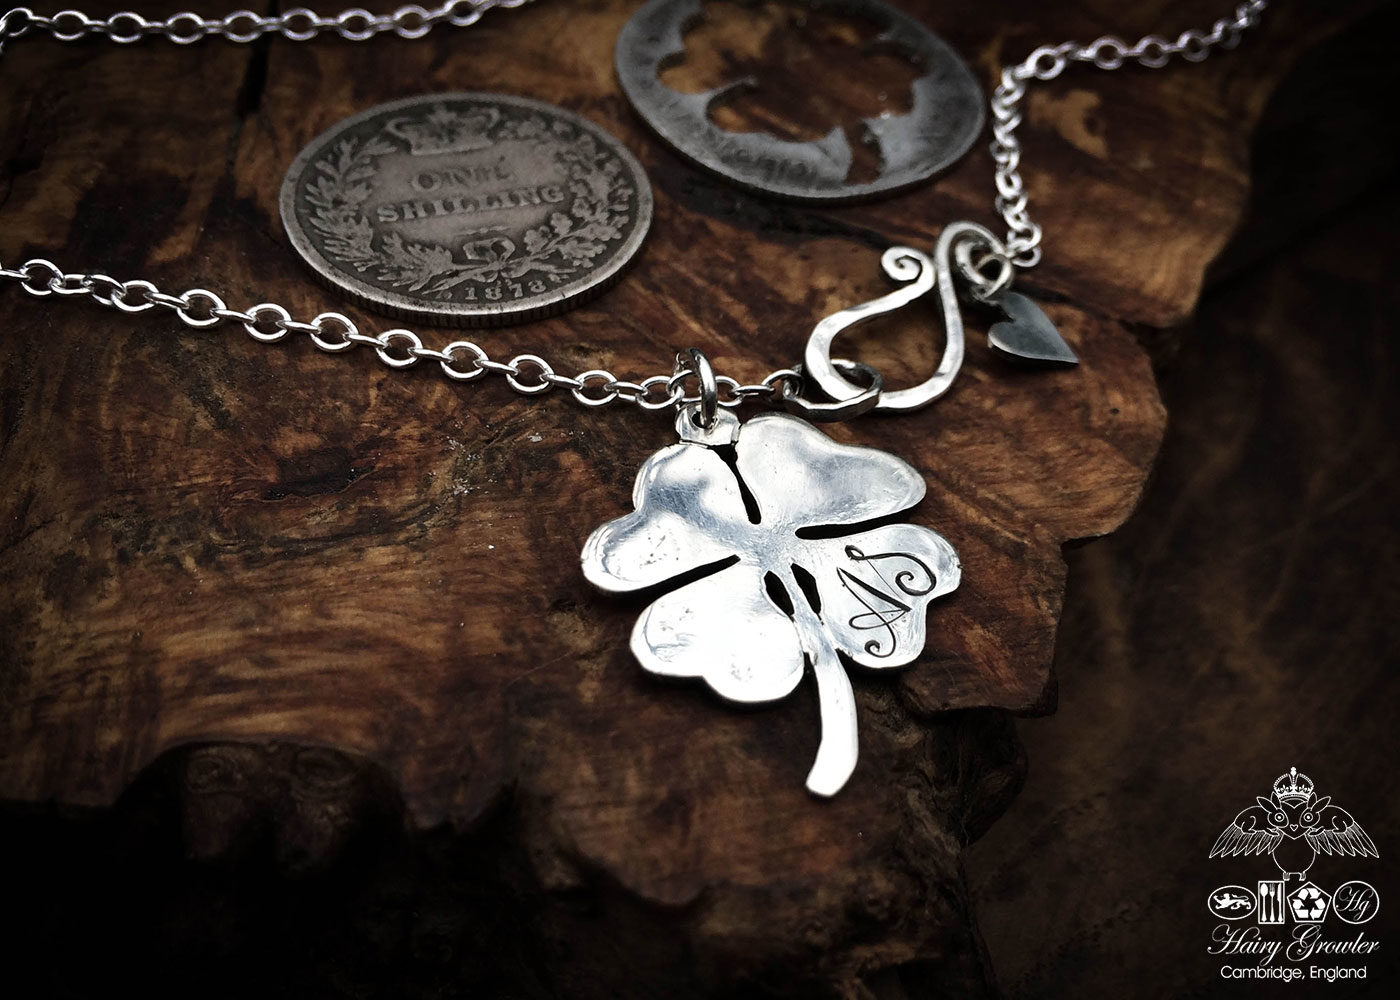 leaf clover necklace